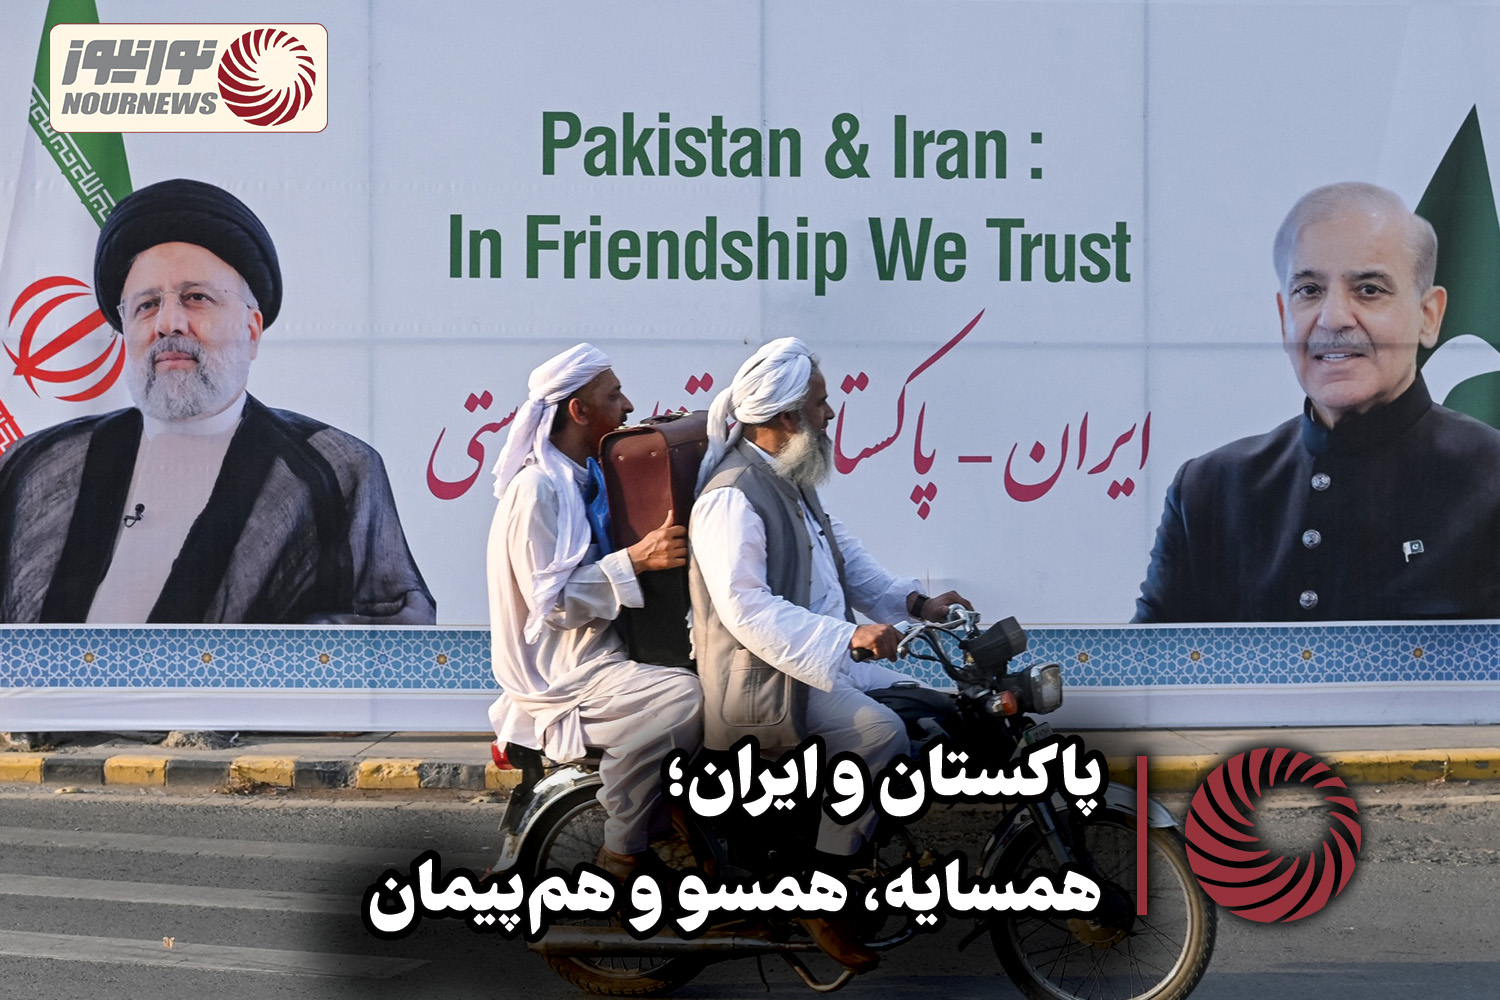 نور ویدئو | پاکستان و ایران ؛ همسایه، همسو و هم پیمان +فیلم